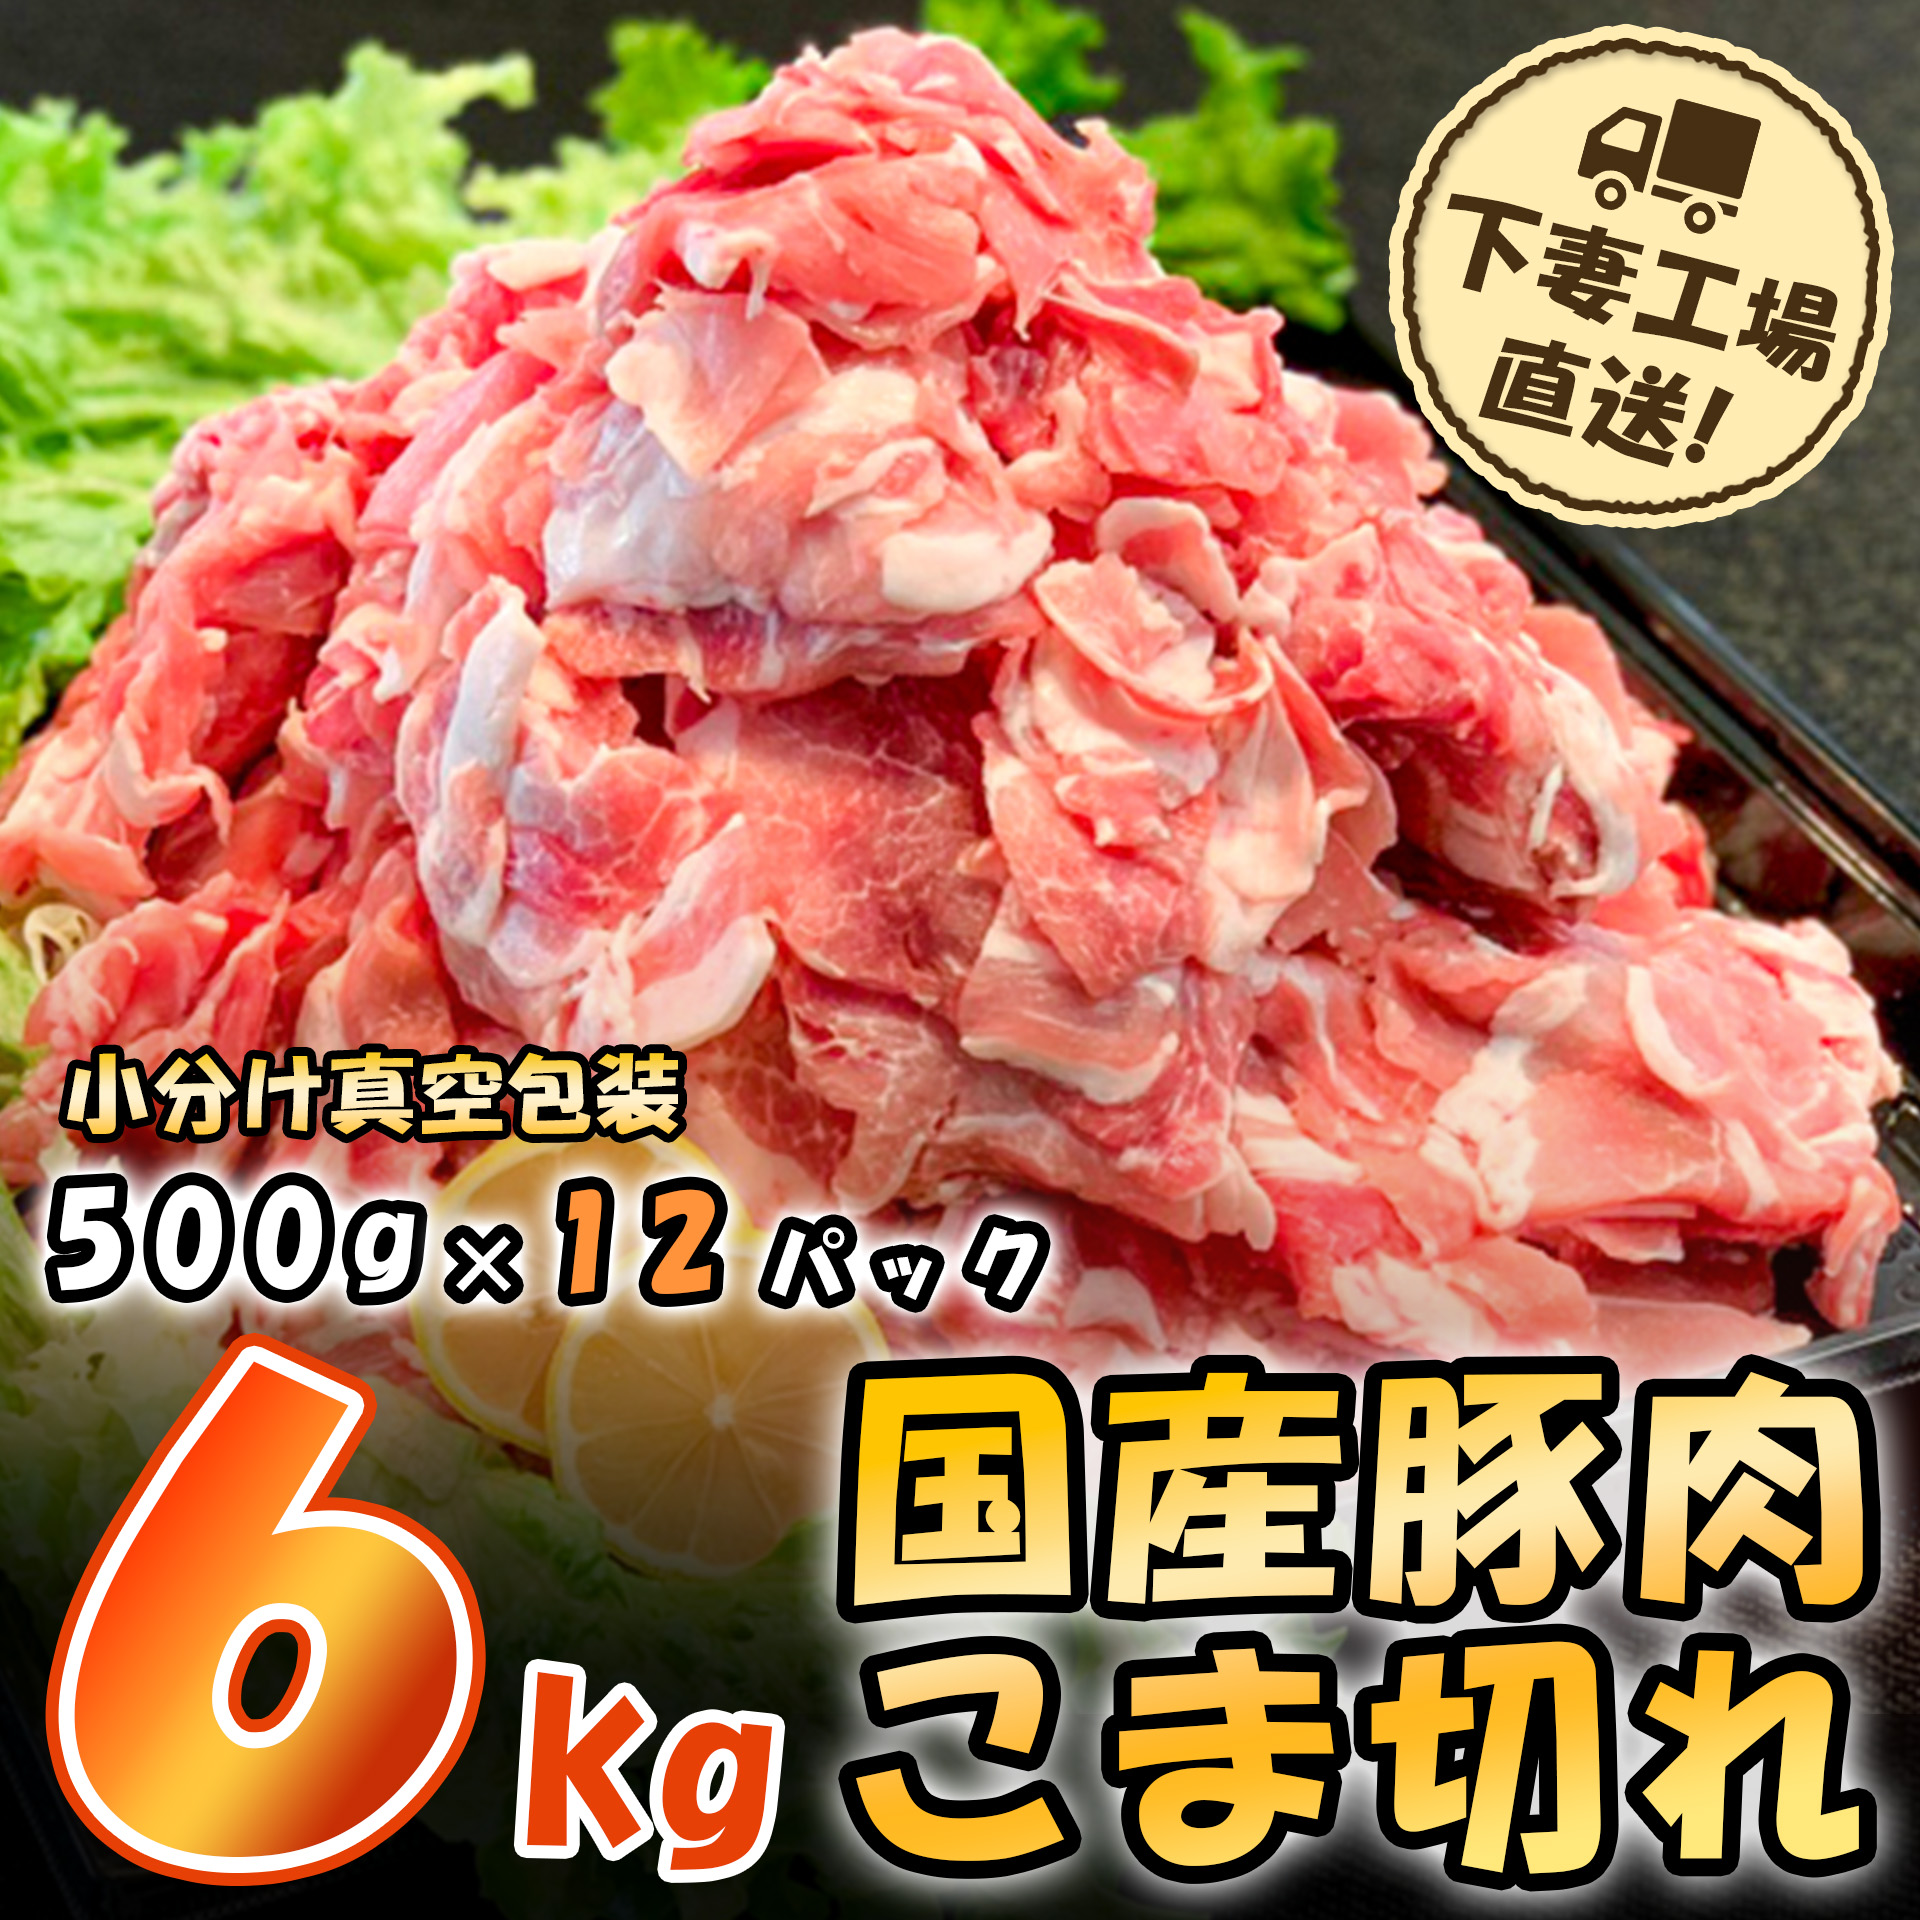 国産豚肉こま切れドドーンと6kg